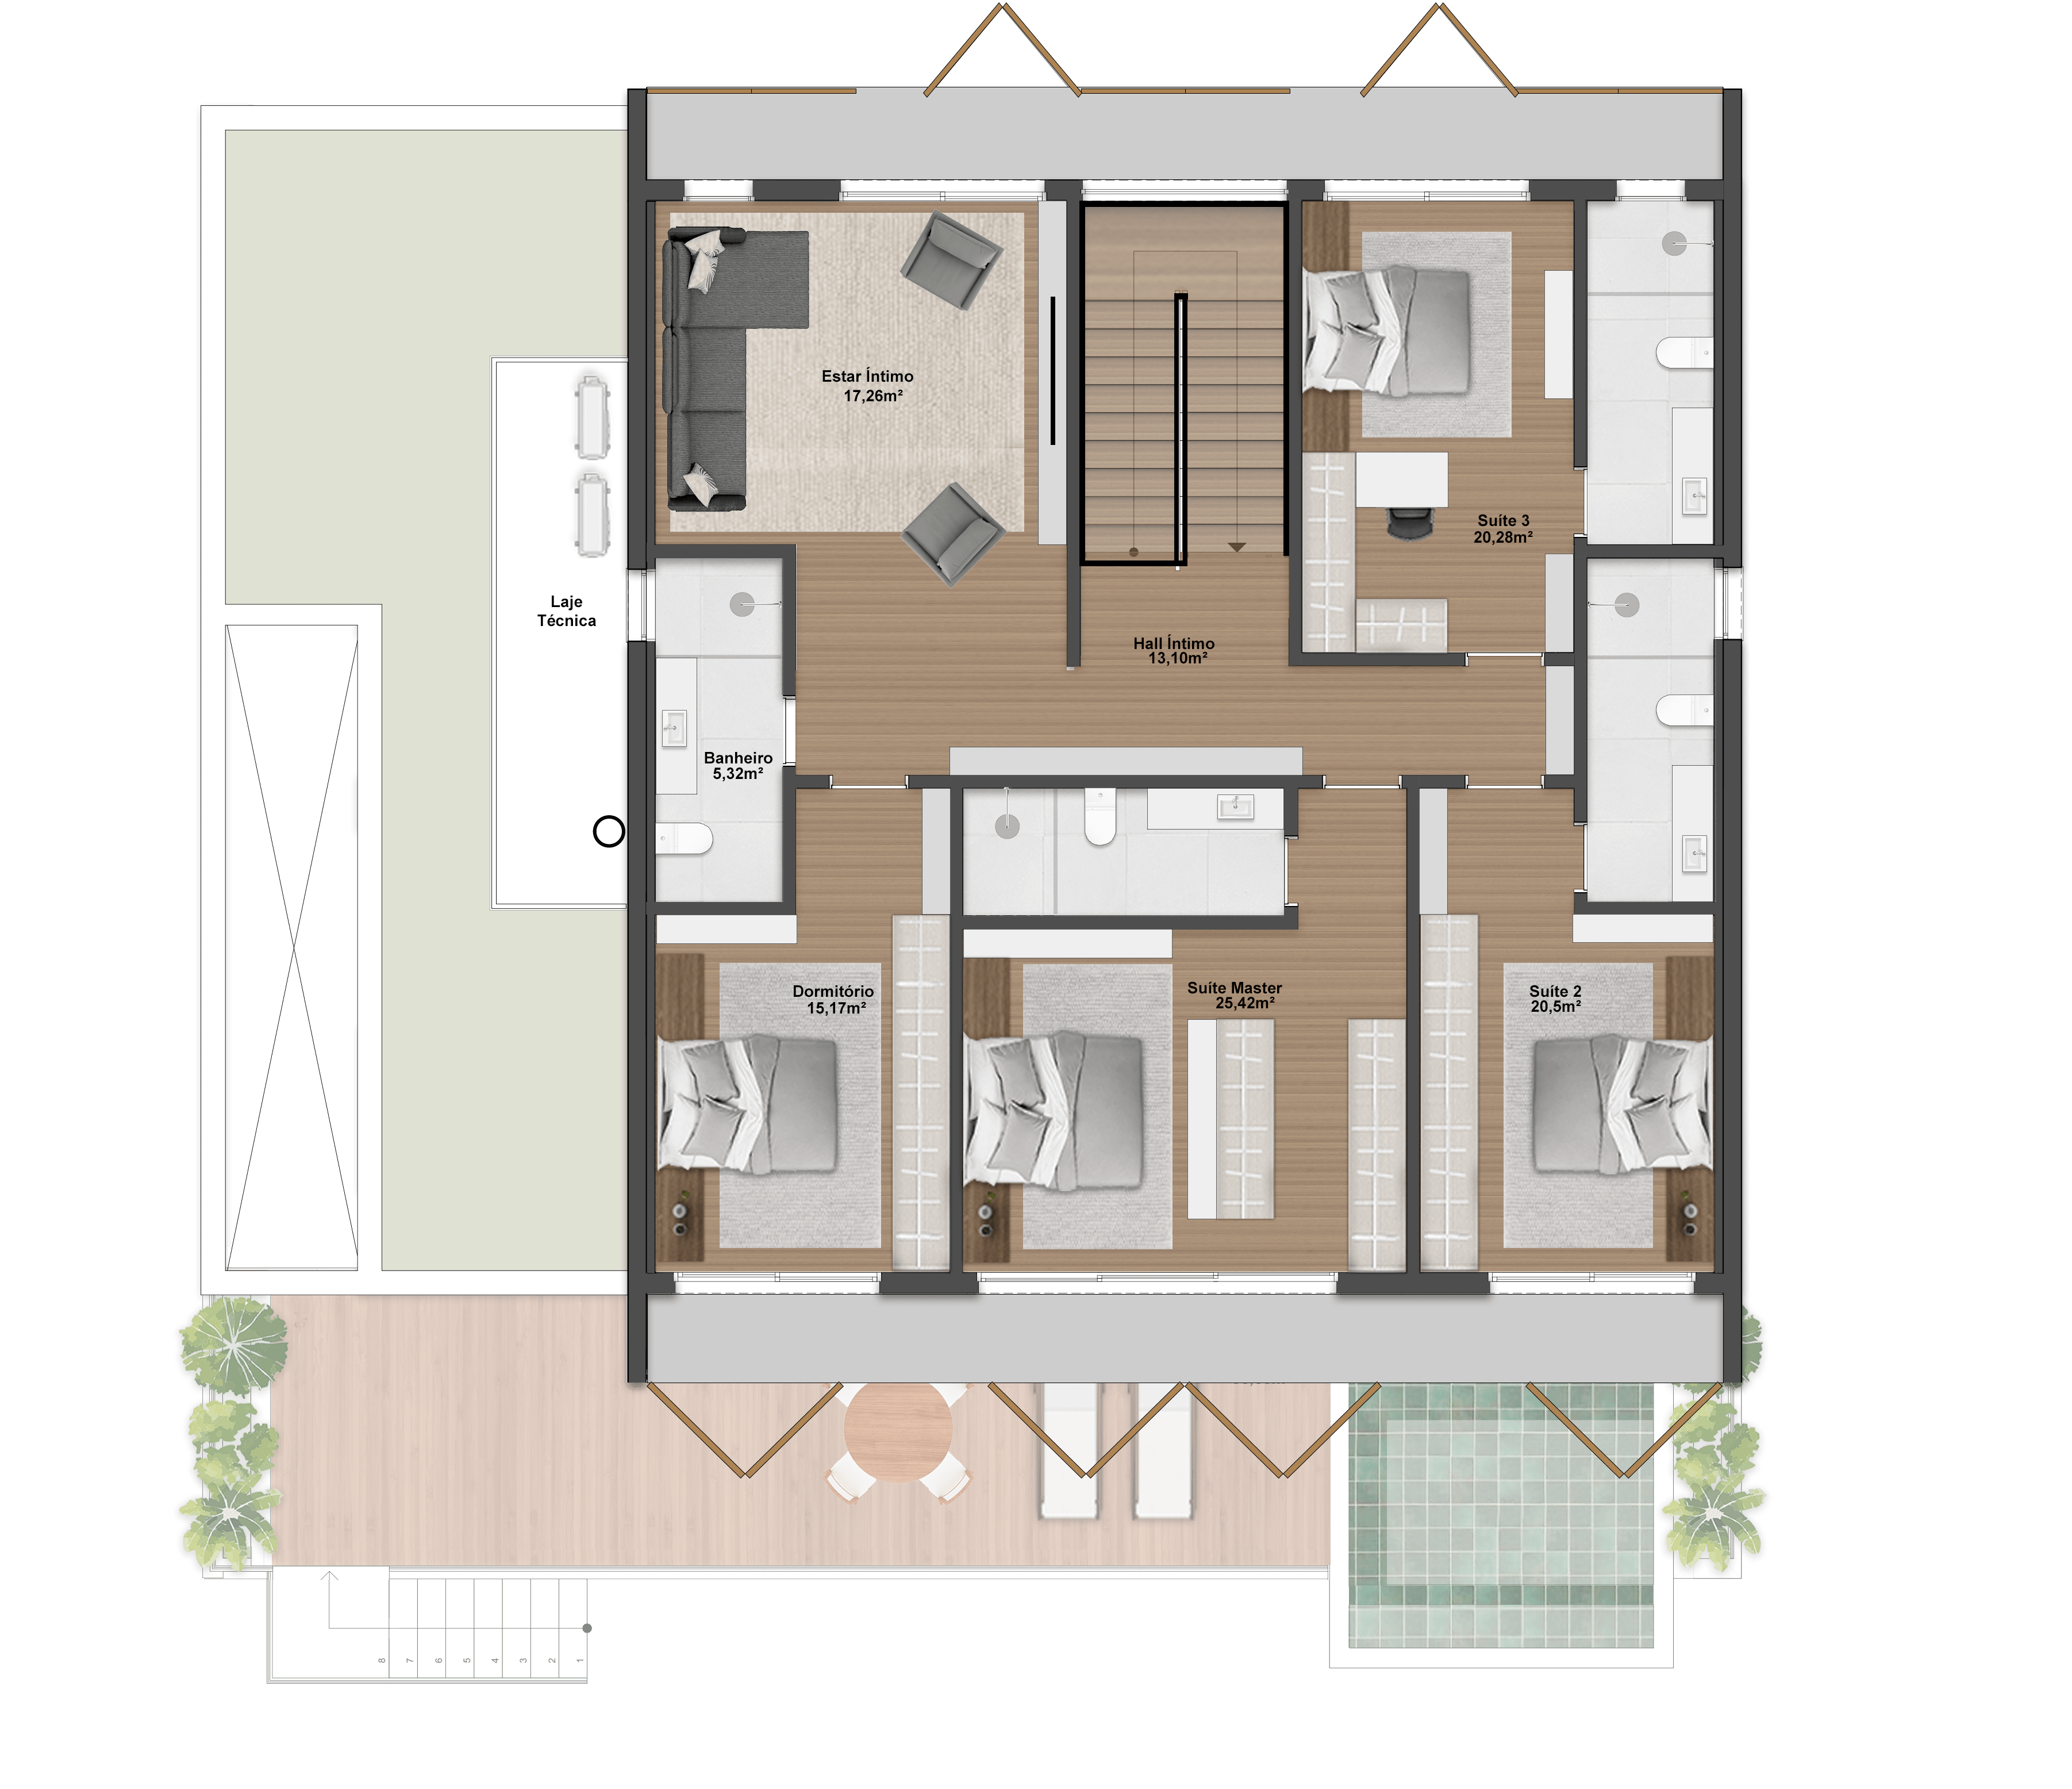 432,97m² | Opção 1 | Pavimento superior | 3 Suítes + 1 Dormitório + Gabinete